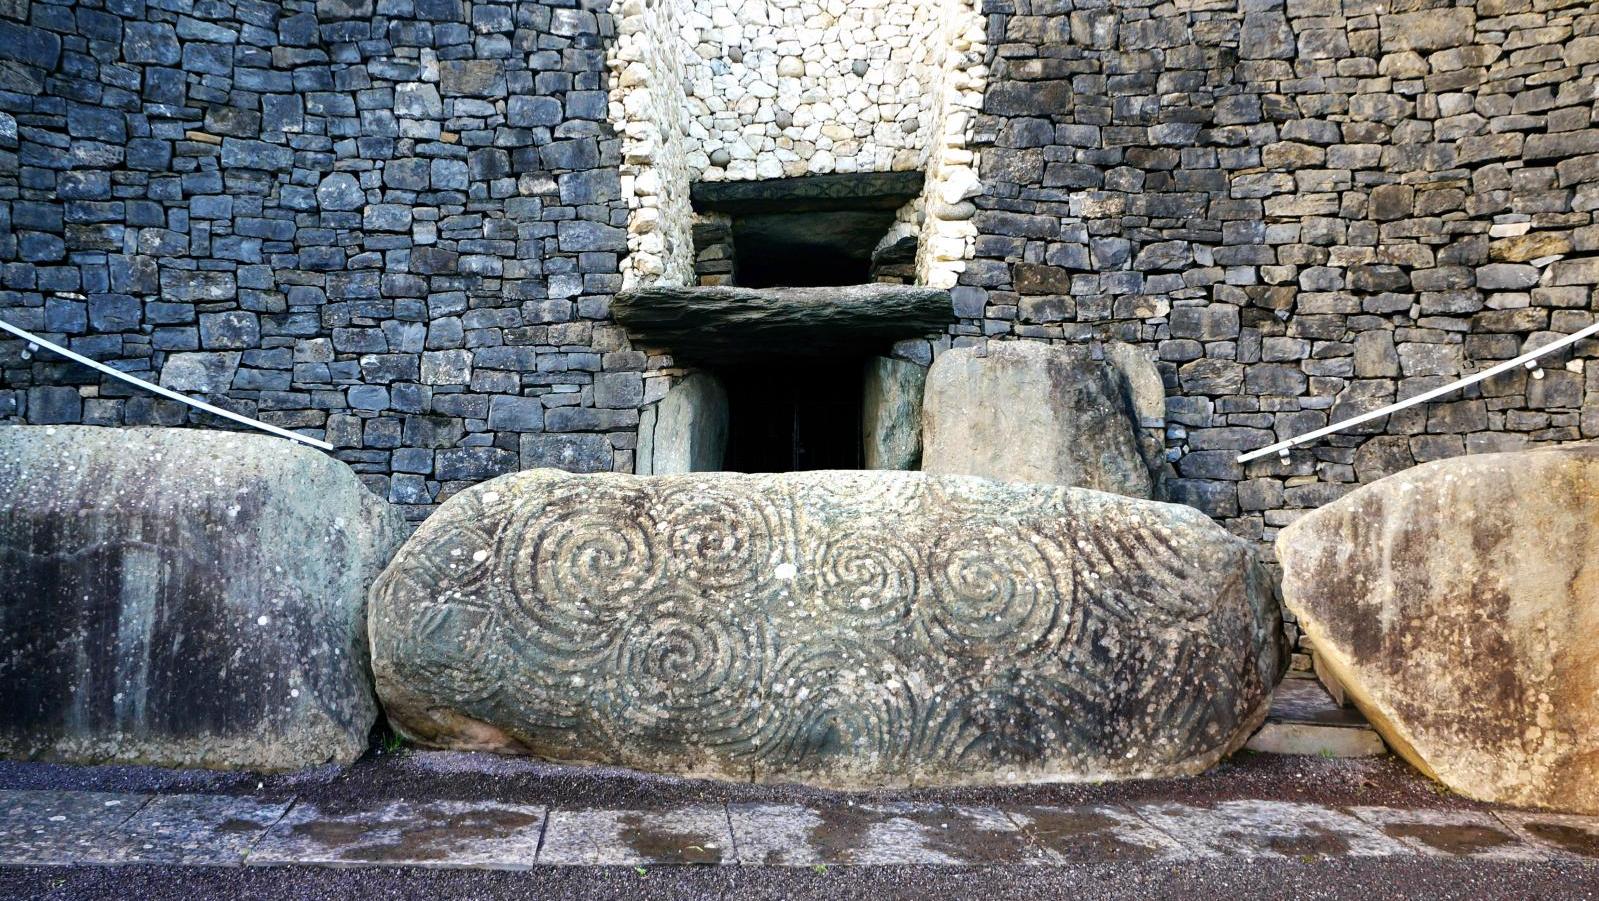 Entrée du cairn de Newgrange, surmontée de la chambre pour capter le soleil au solstice... Les mégalithes de Newgrange, haut lieu irlandais